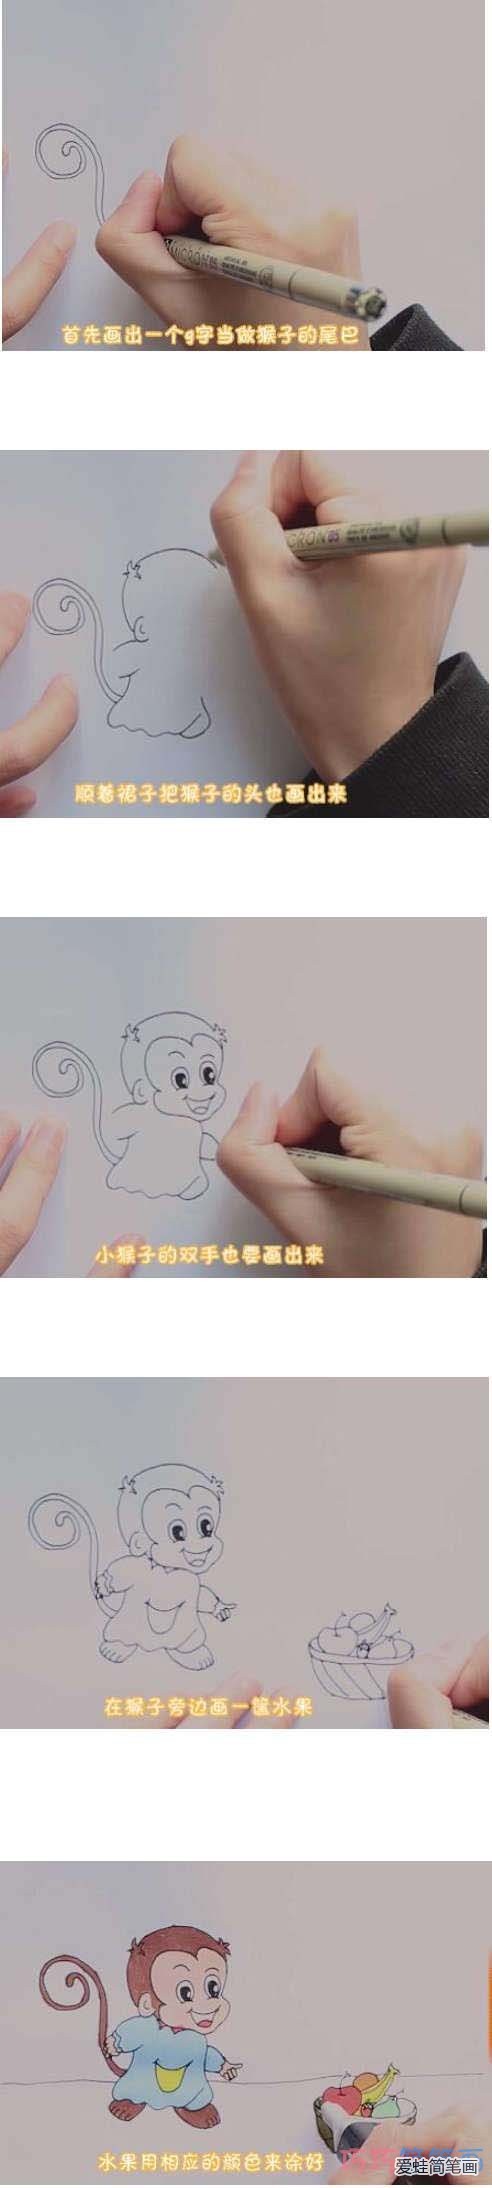 教你一步一步绘画猴子简笔画